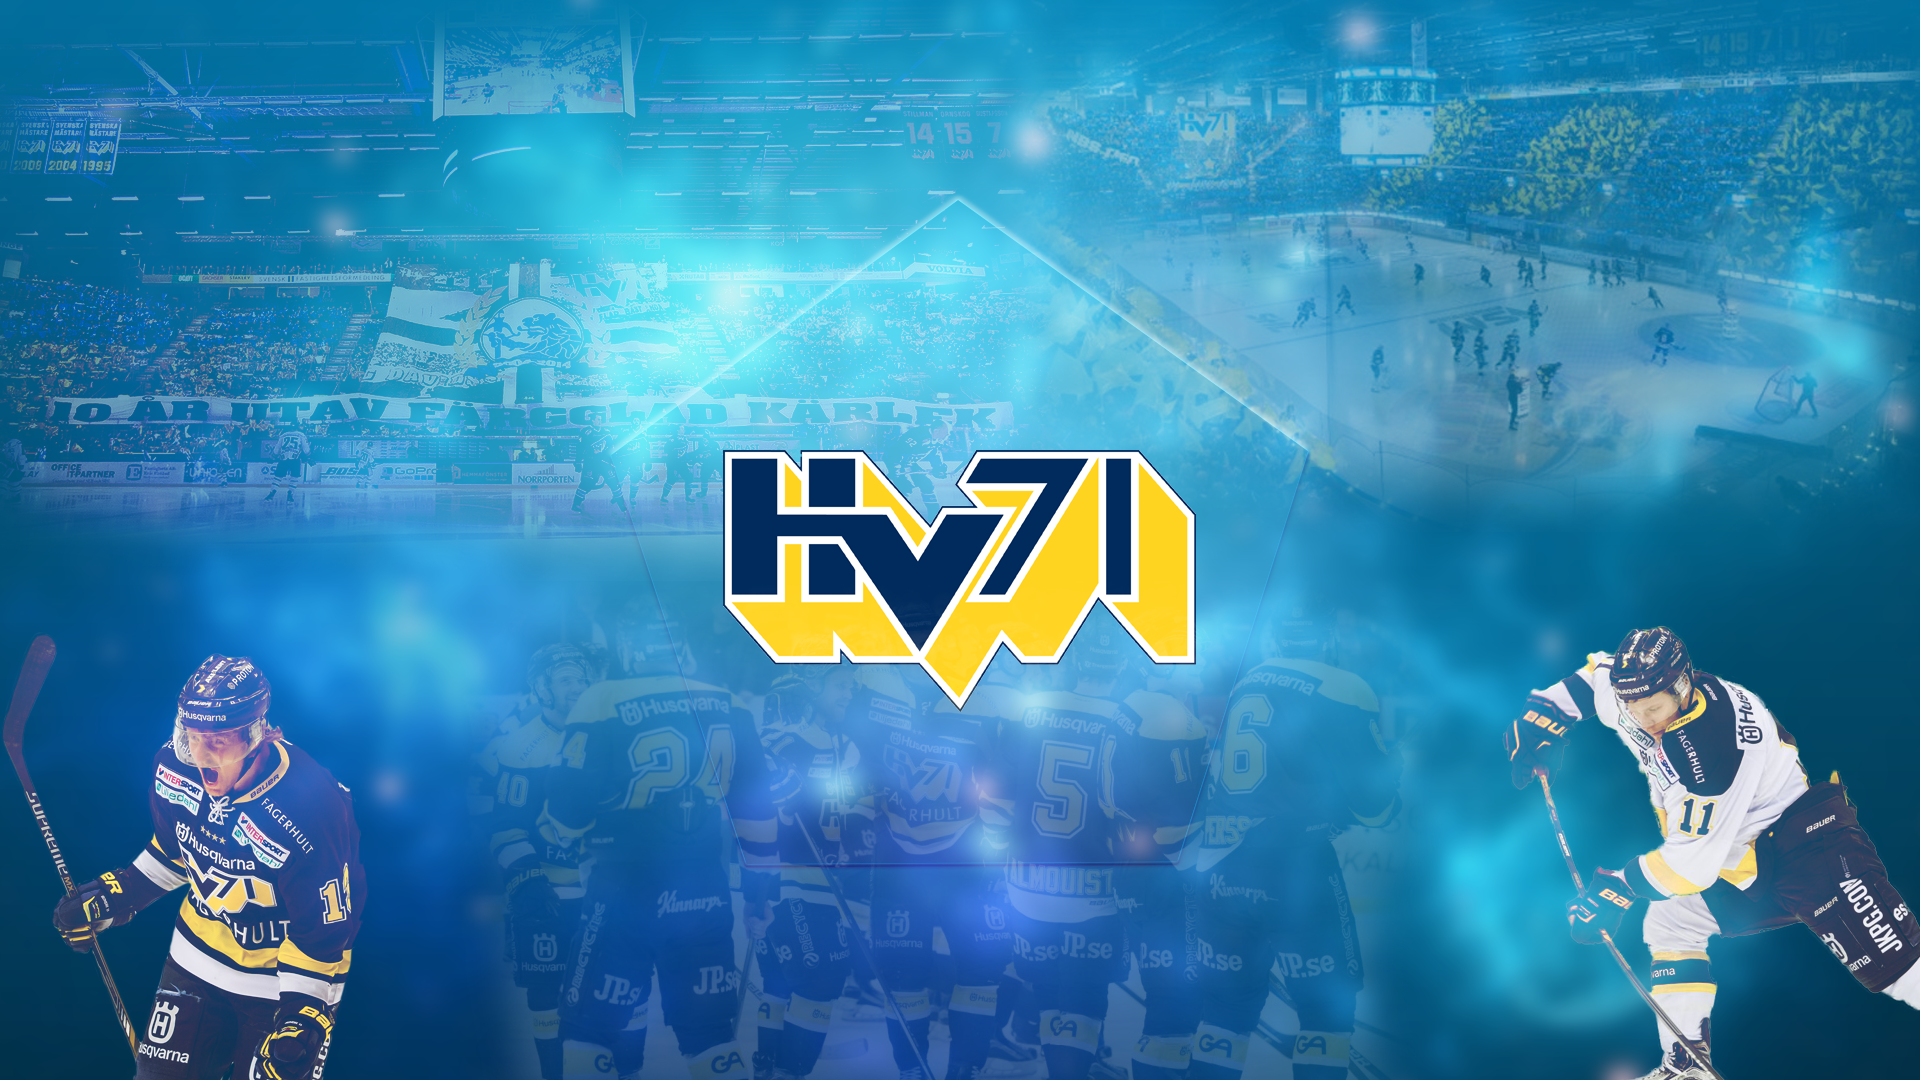 HV71 Ice Hockey Sport Men 1920x1080